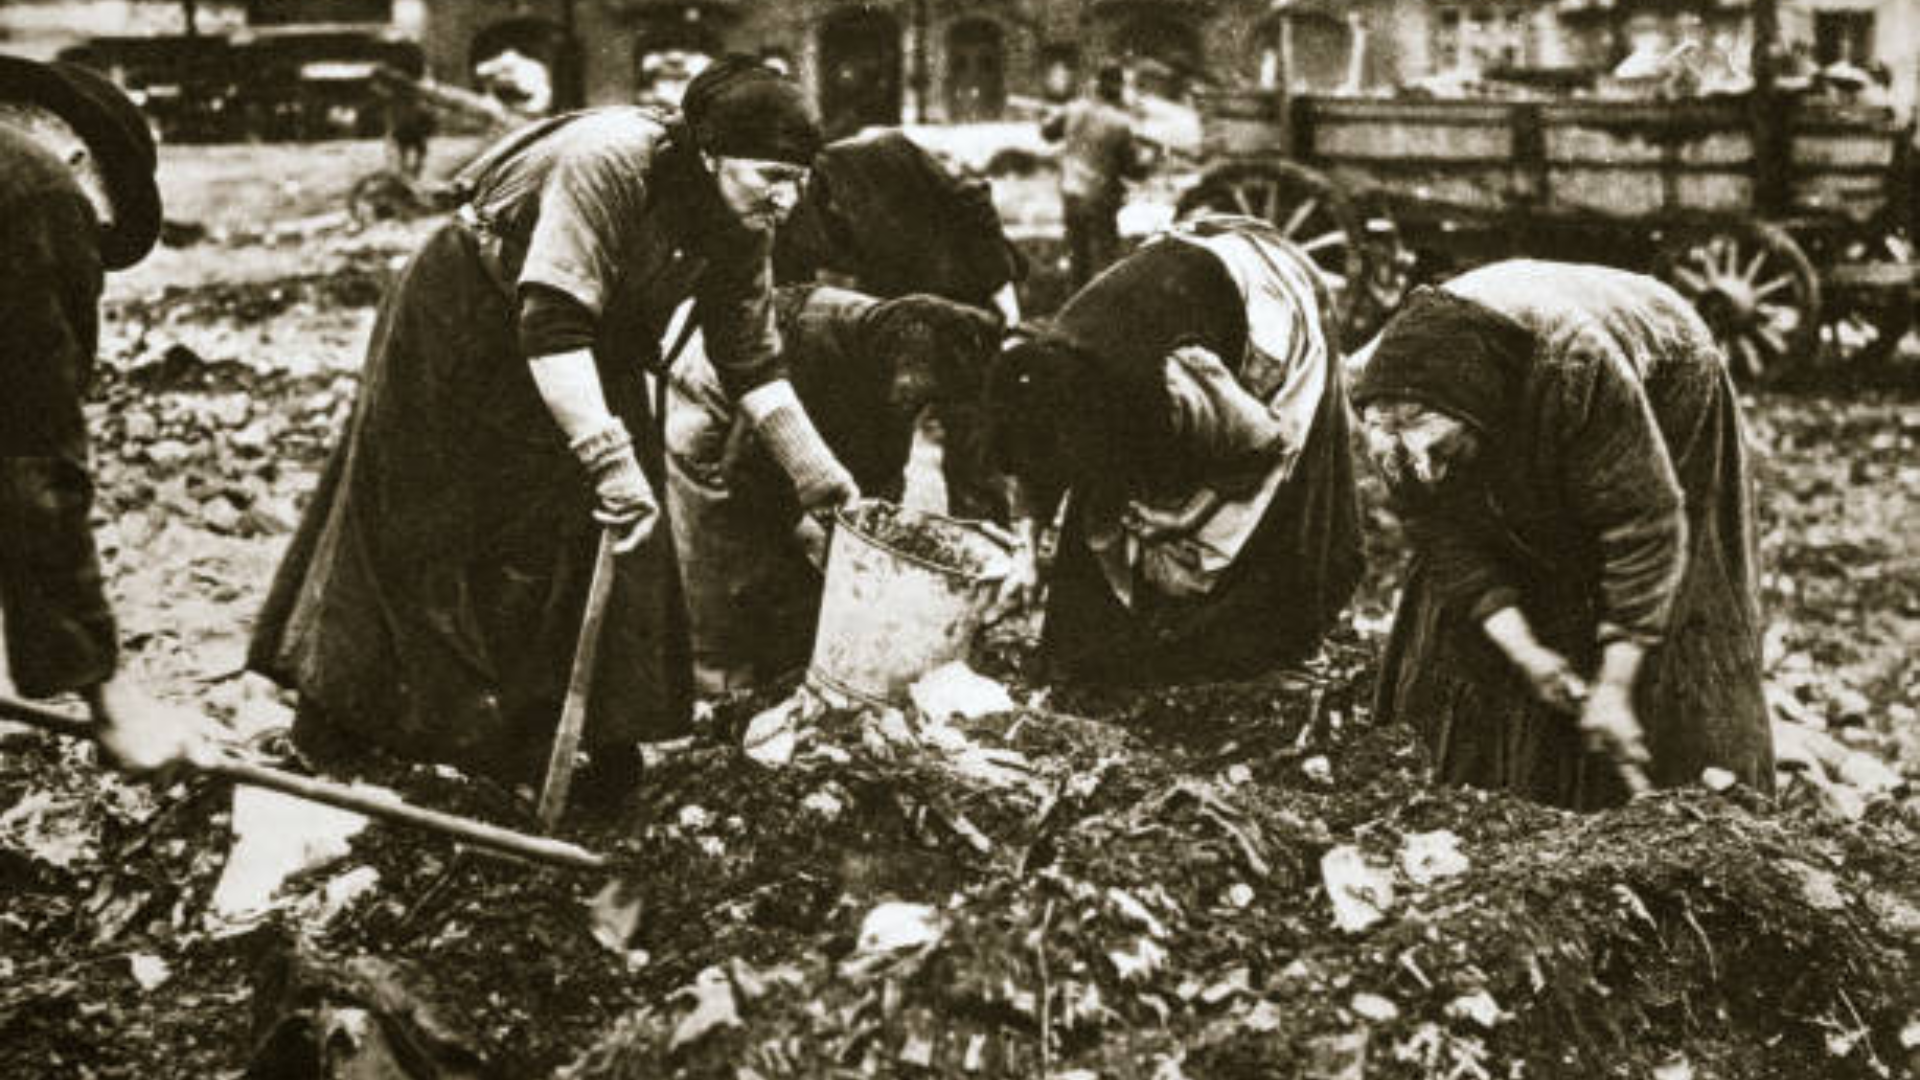 Mulheres dos escombros: heroínas que reergueram a Alemanha após a 2ª Guerra